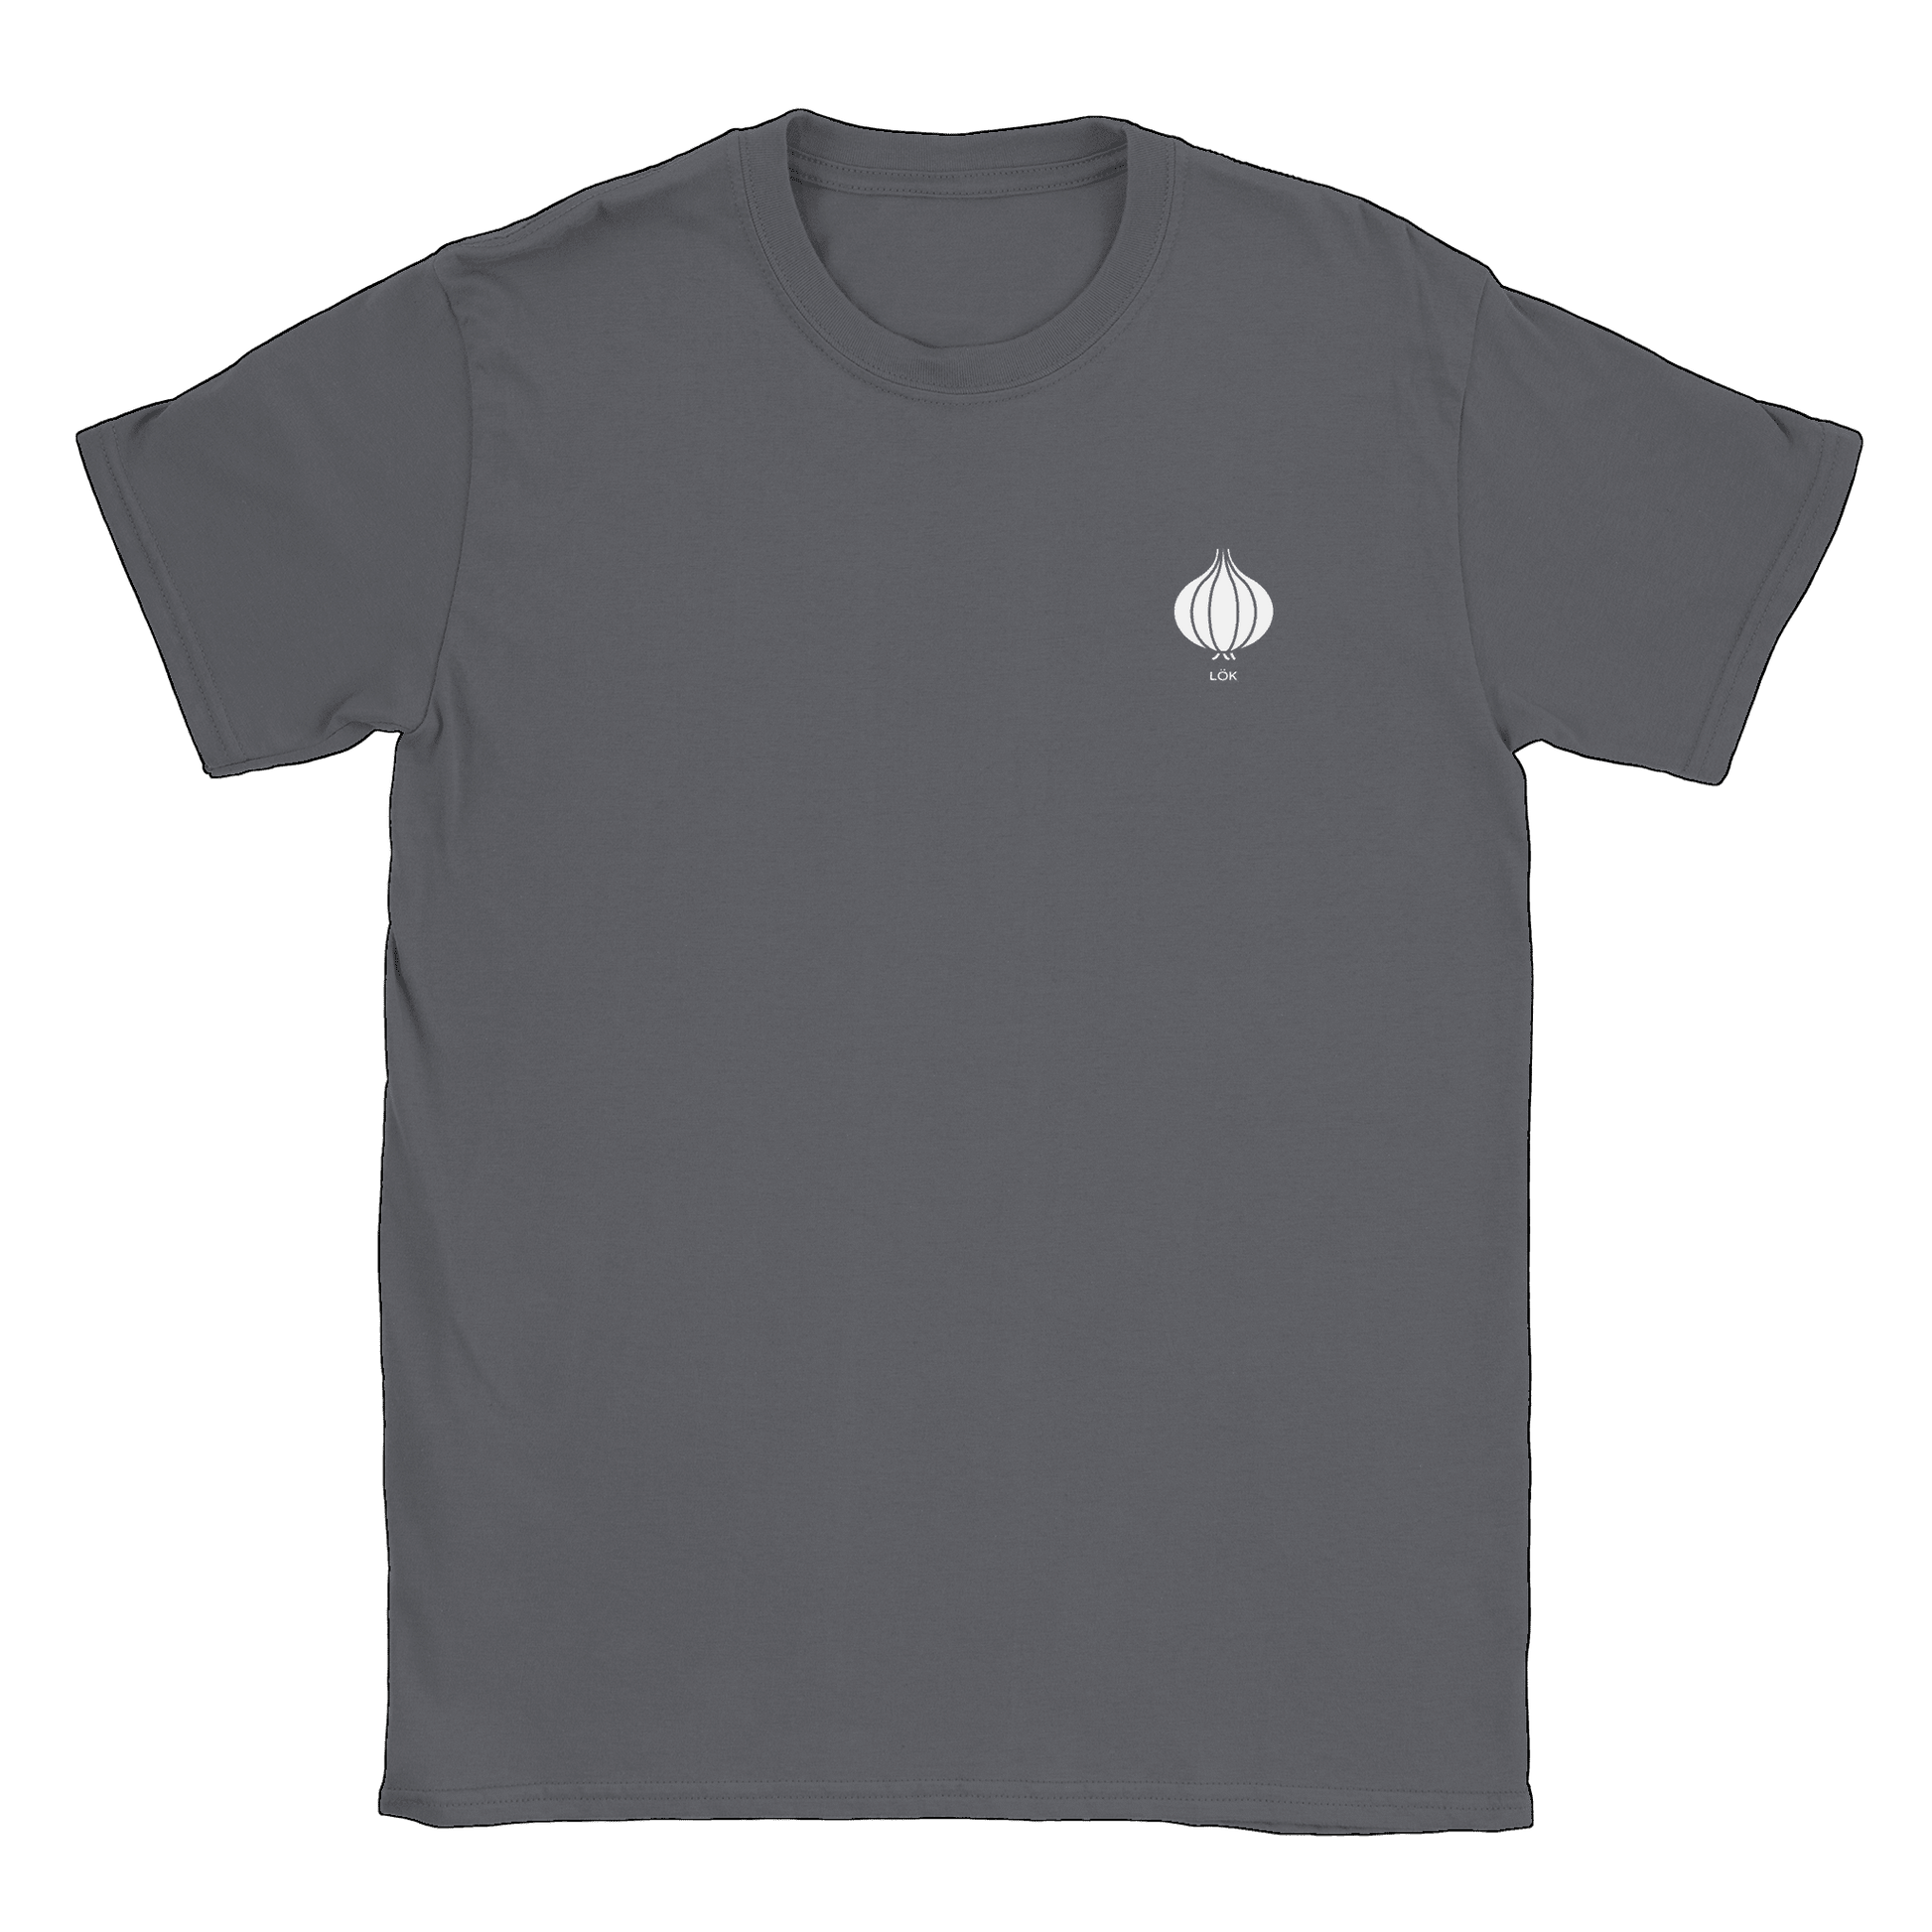 Lök liten - T-shirt Charcoal